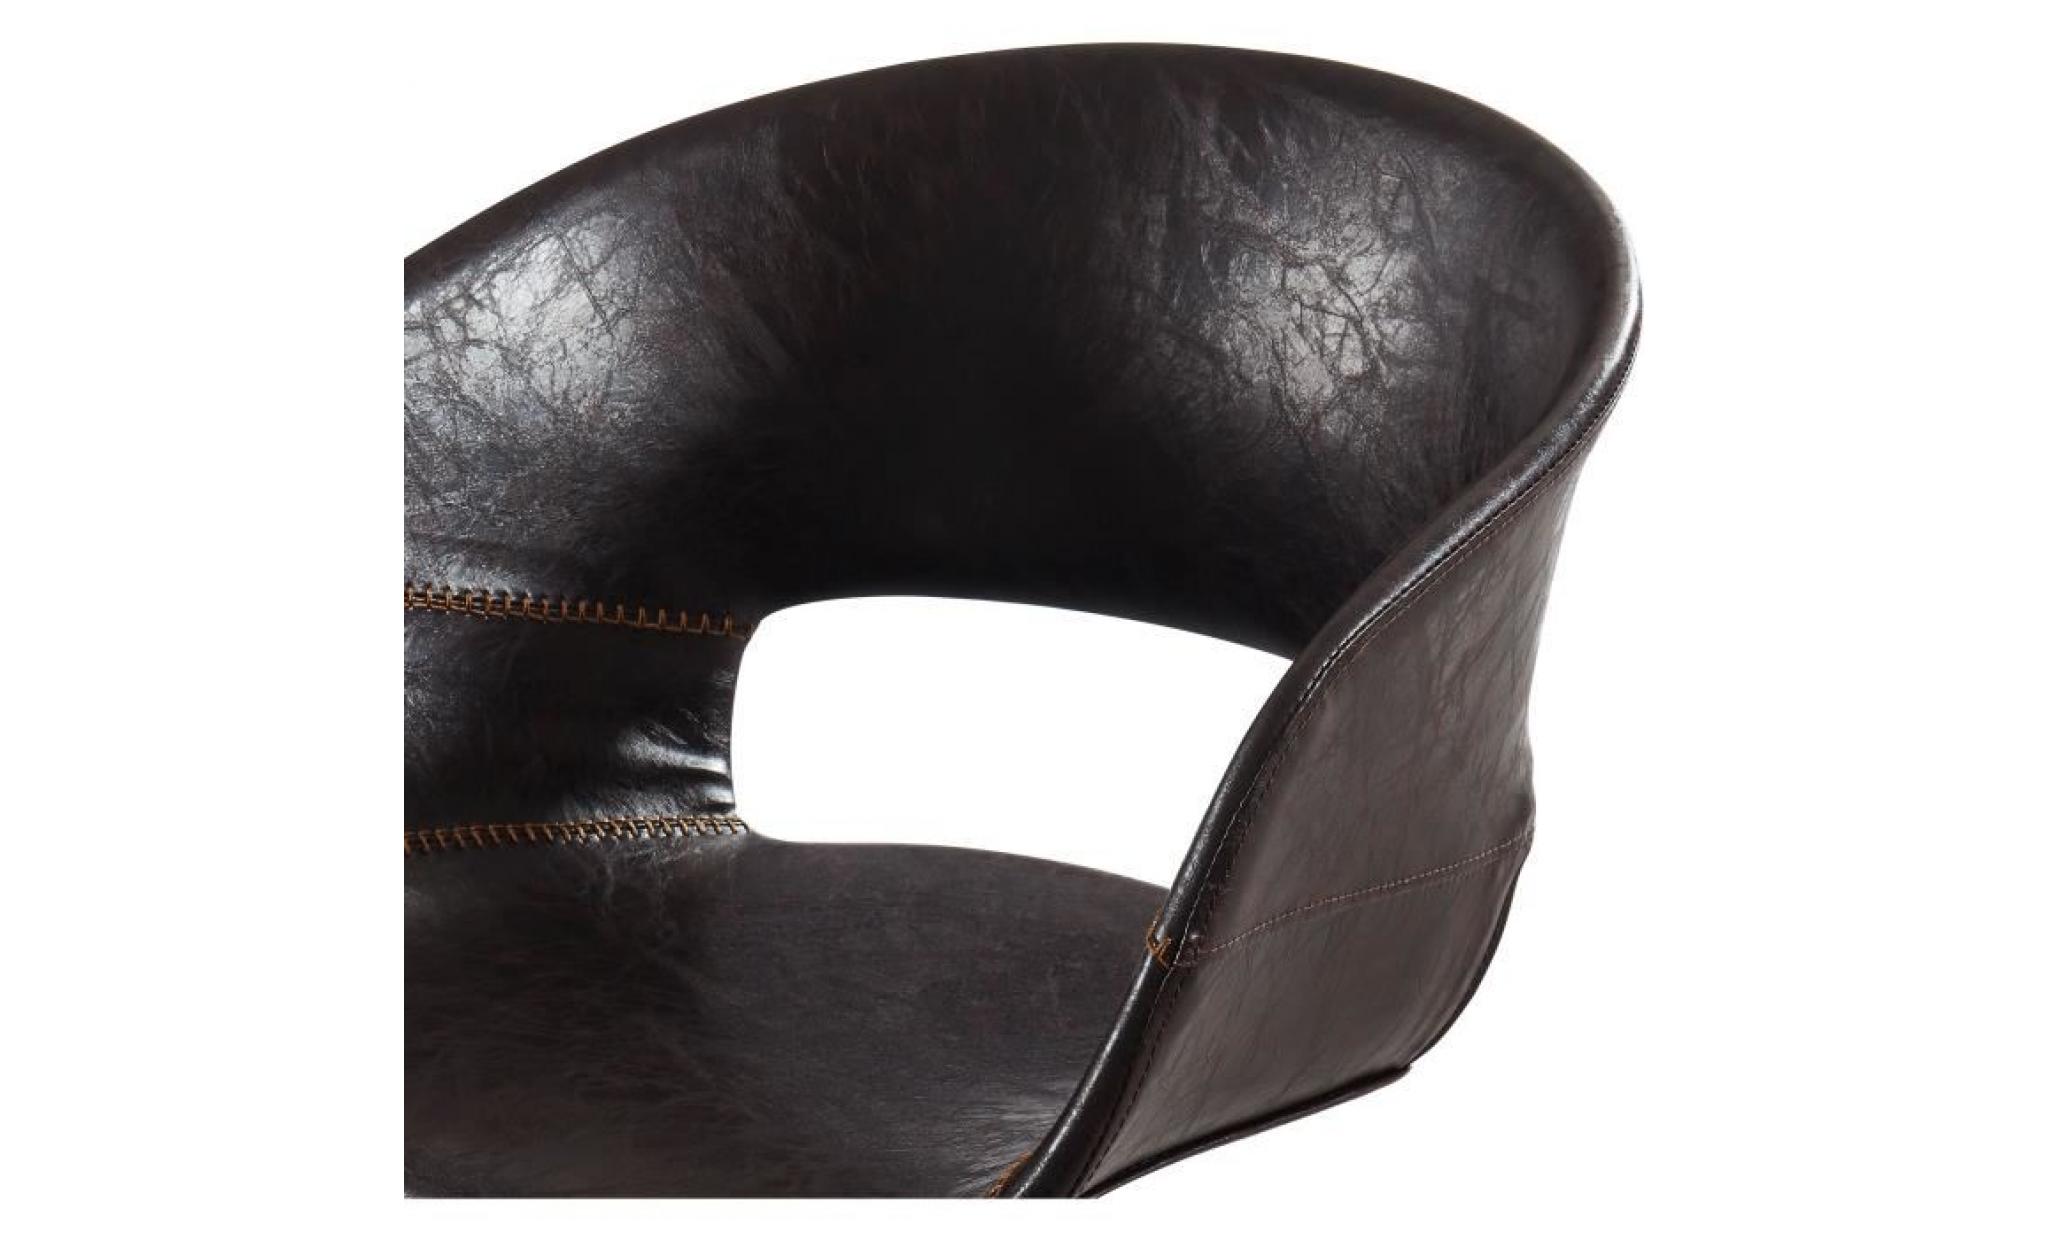 solal chaise de bureau   simili marron   style contemporain   l 62 x p 62 cm pas cher